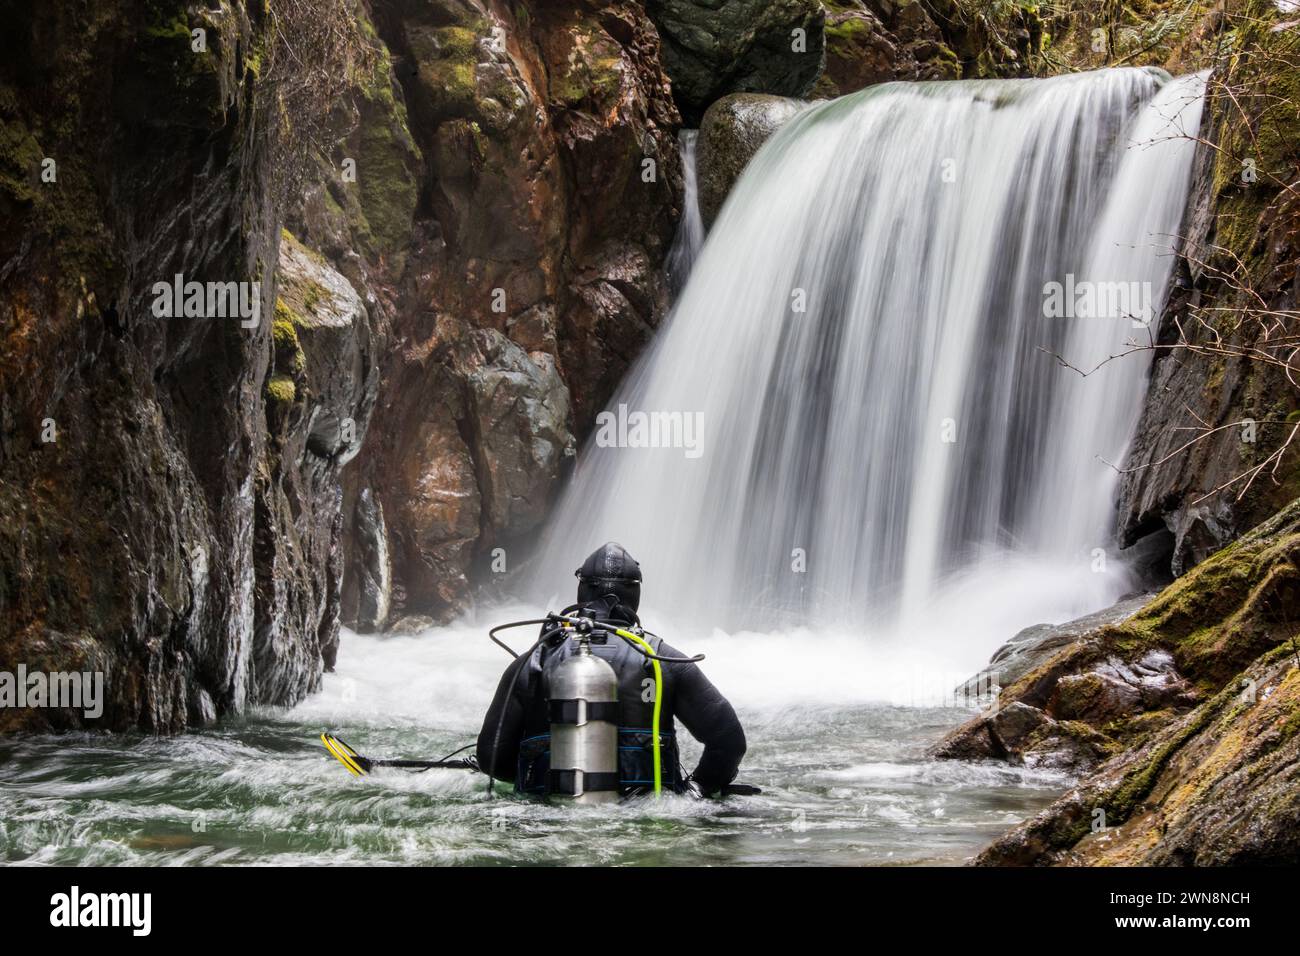 Rückansicht eines Tauchers, der im Fluss steht und den Wasserfall betrachtet Stockfoto